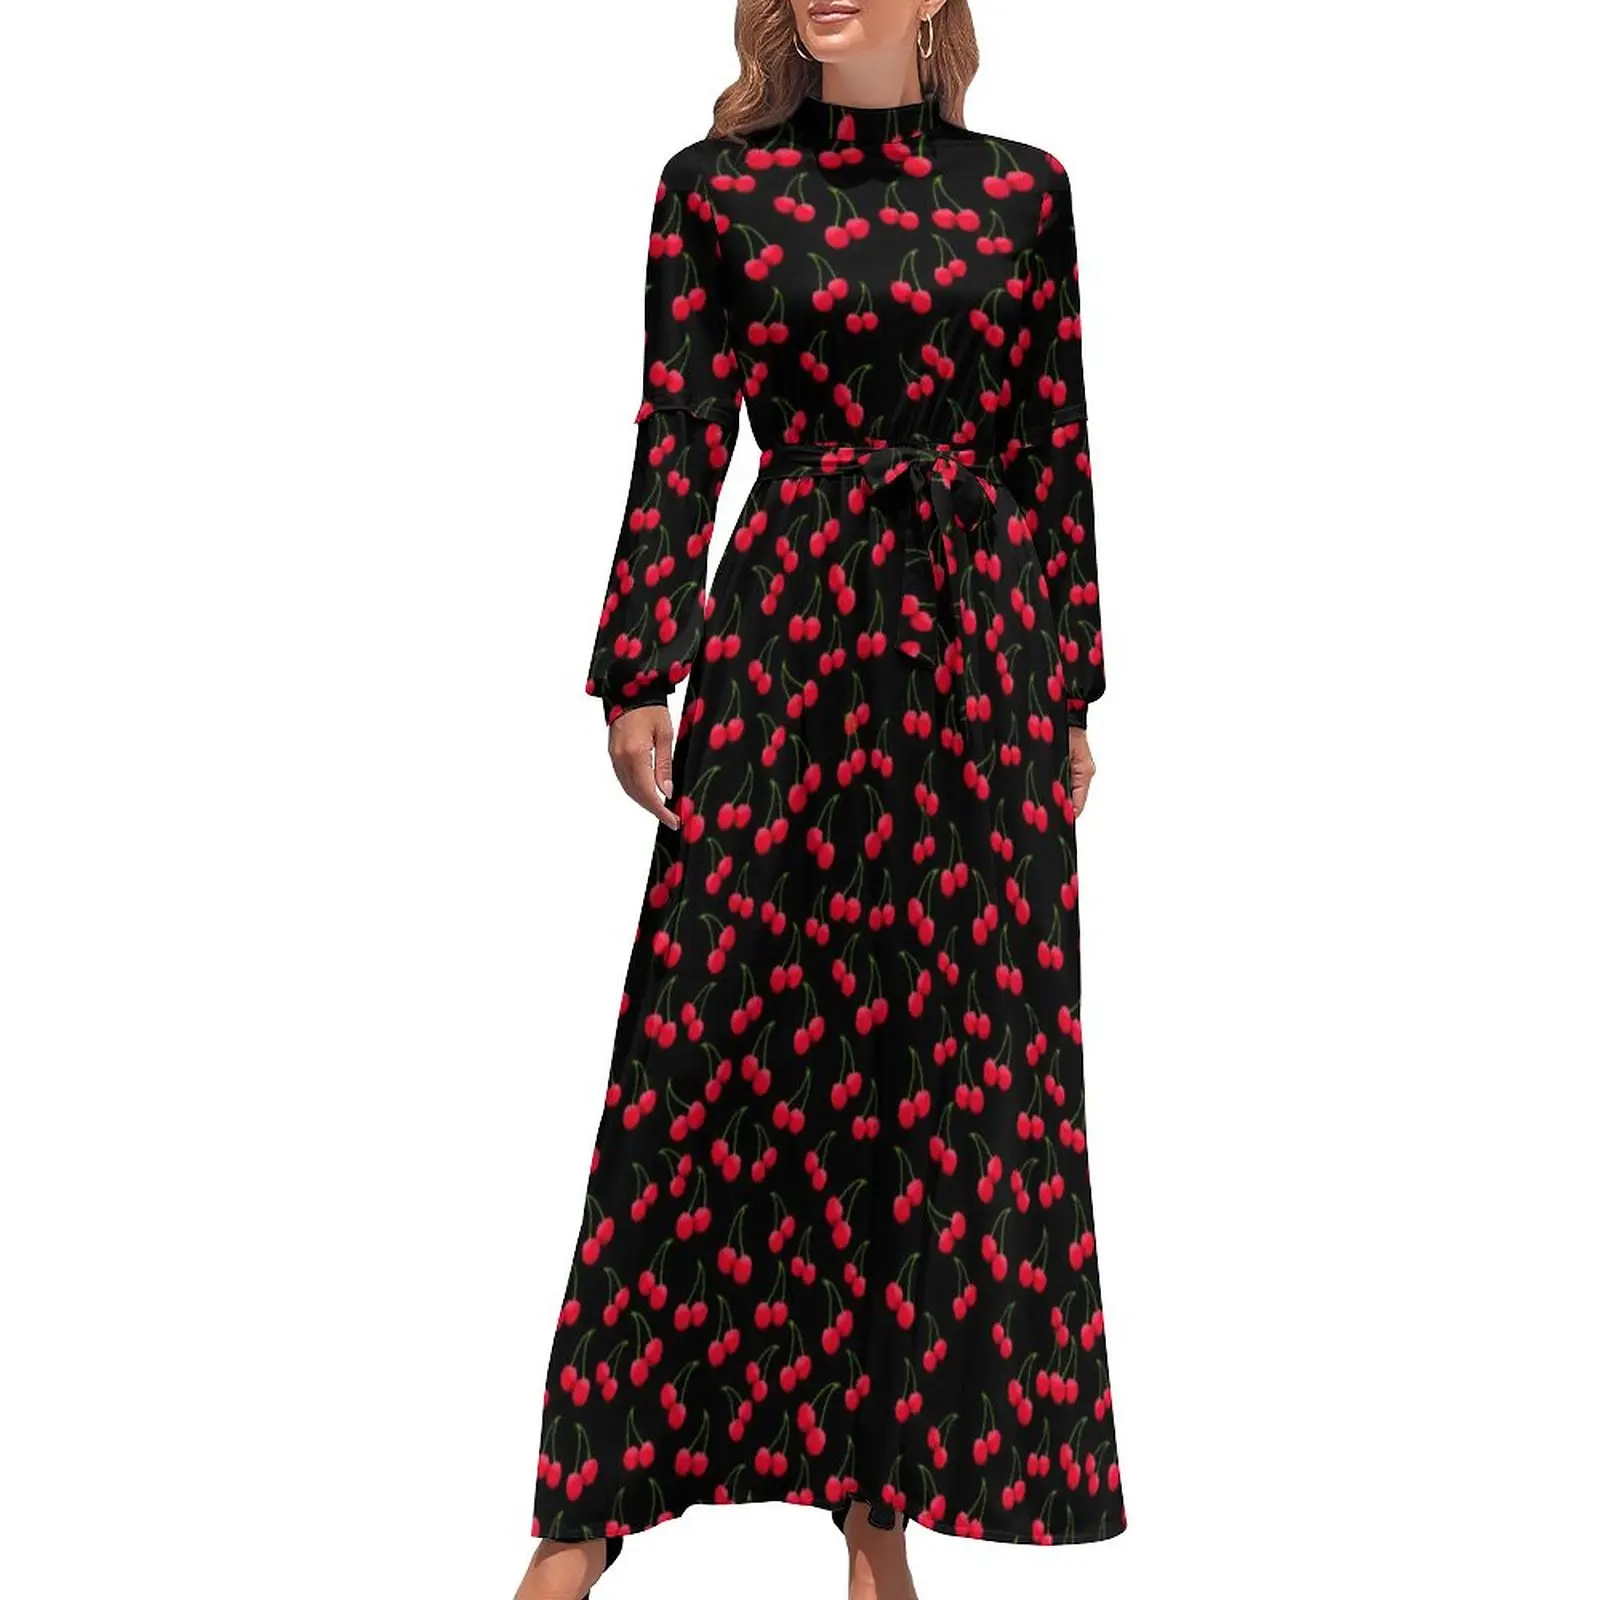 

Винтажное платье макси с принтом вишни, длинное пляжное платье в стиле бохо, с высокой талией, с рисунком красных фруктов, уличная мода